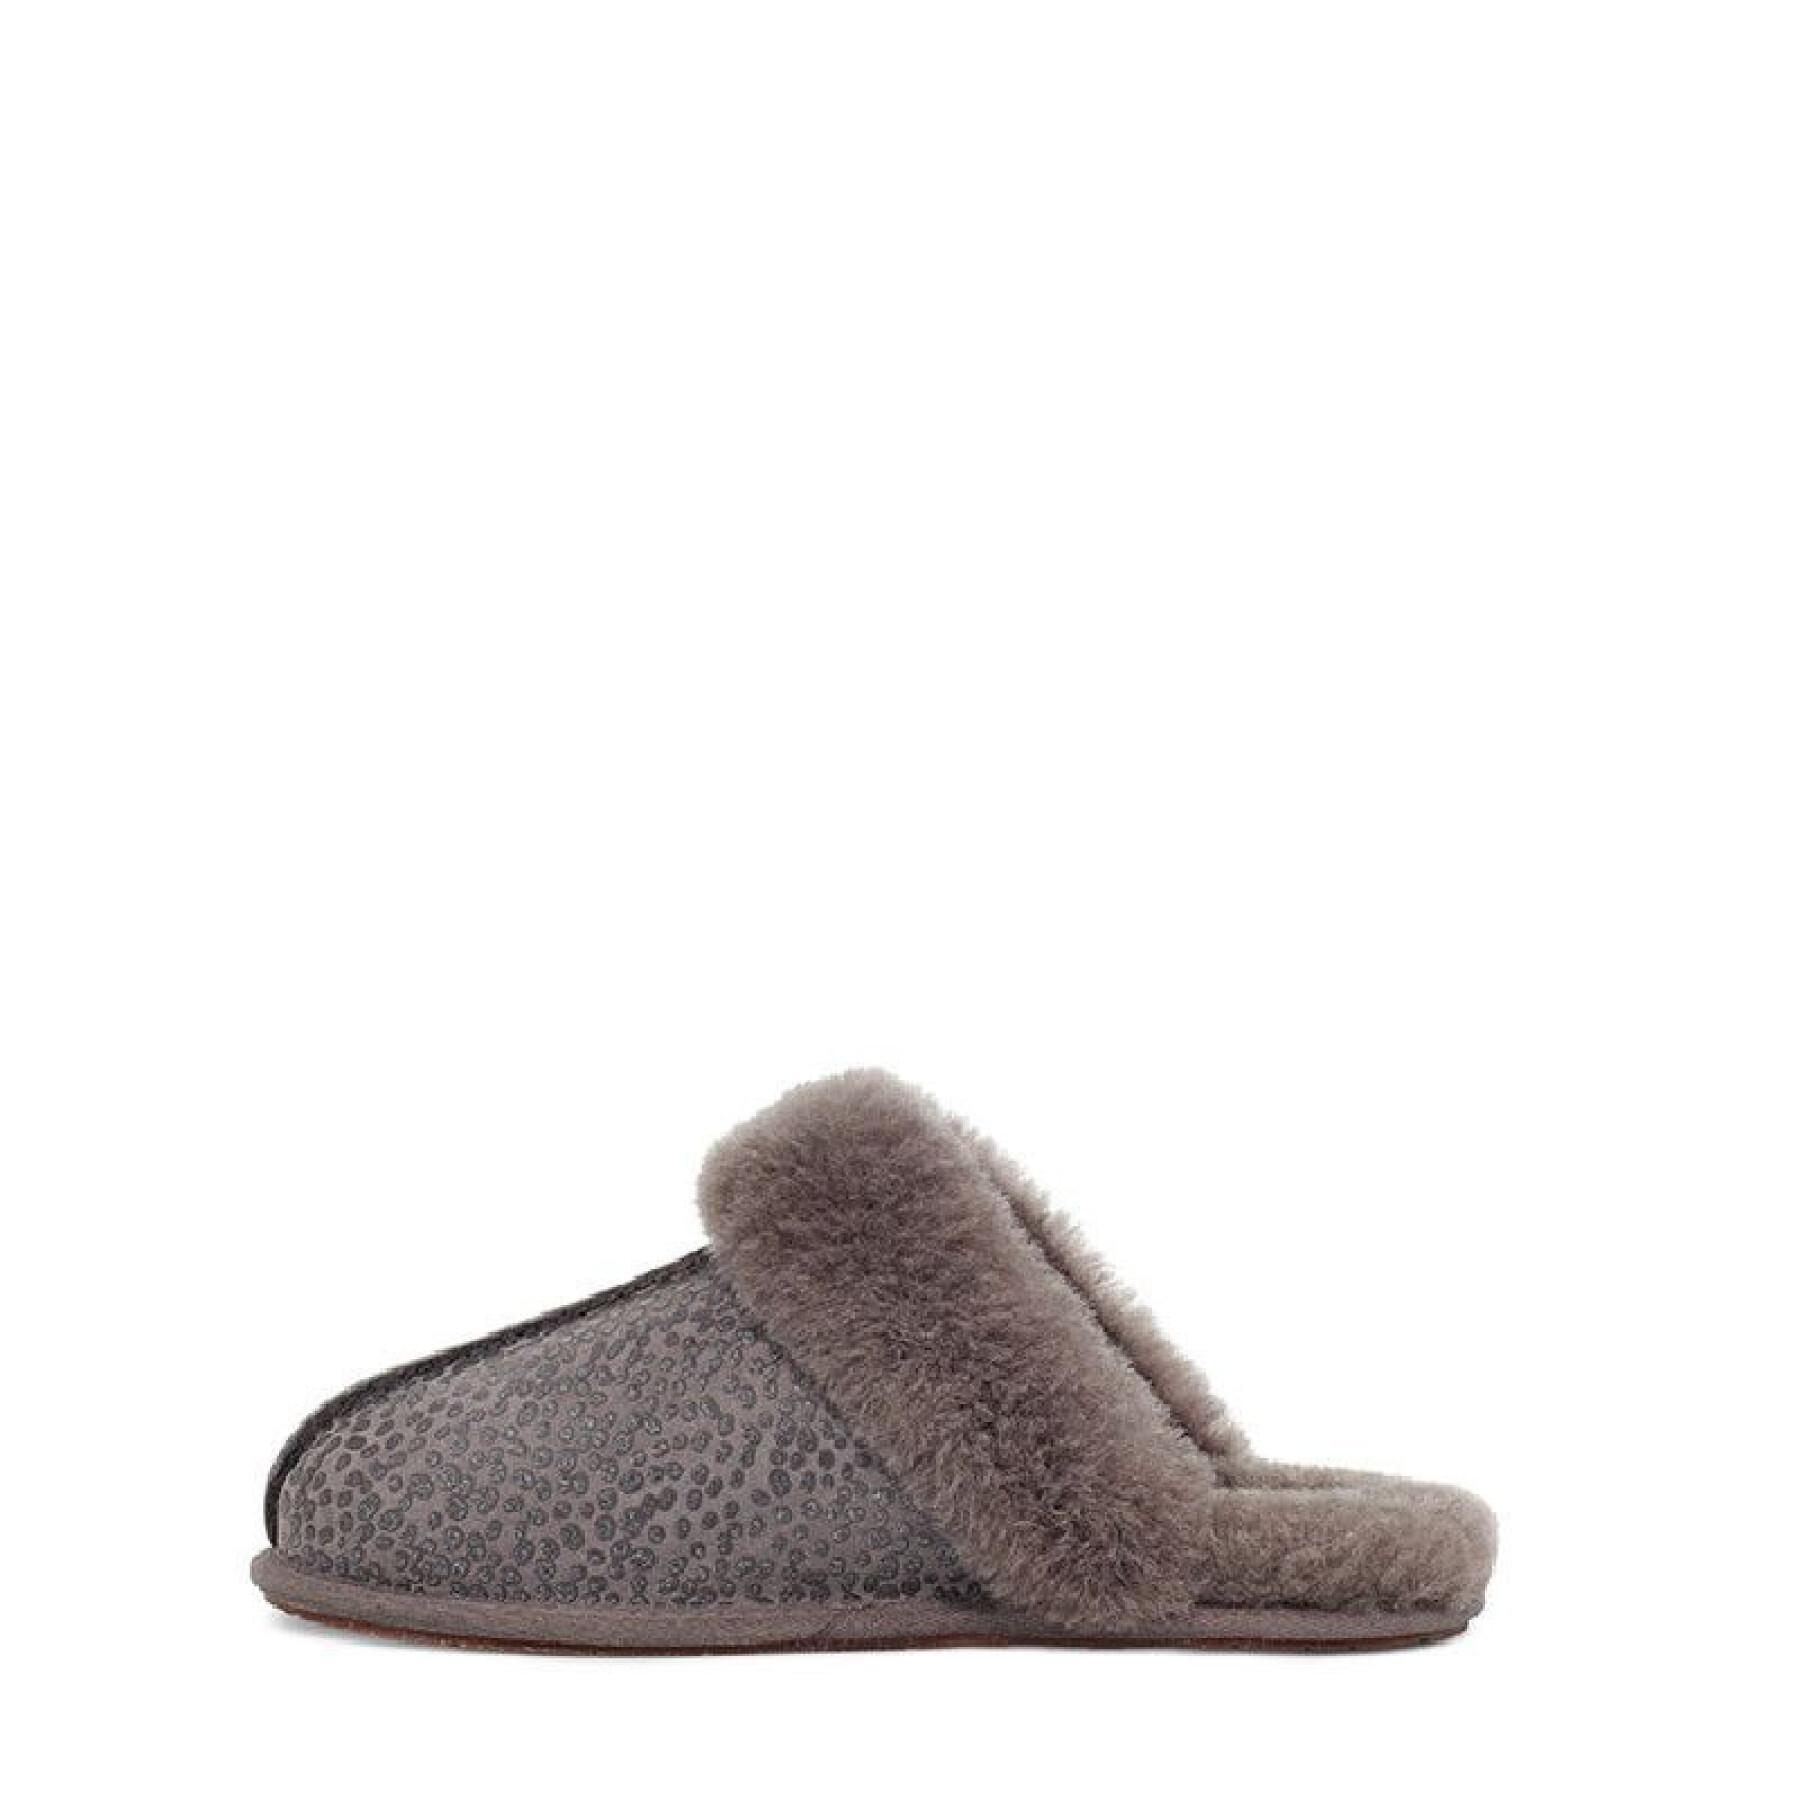 Women's slippers Ugg Scuffette Ii Sparkle Spots